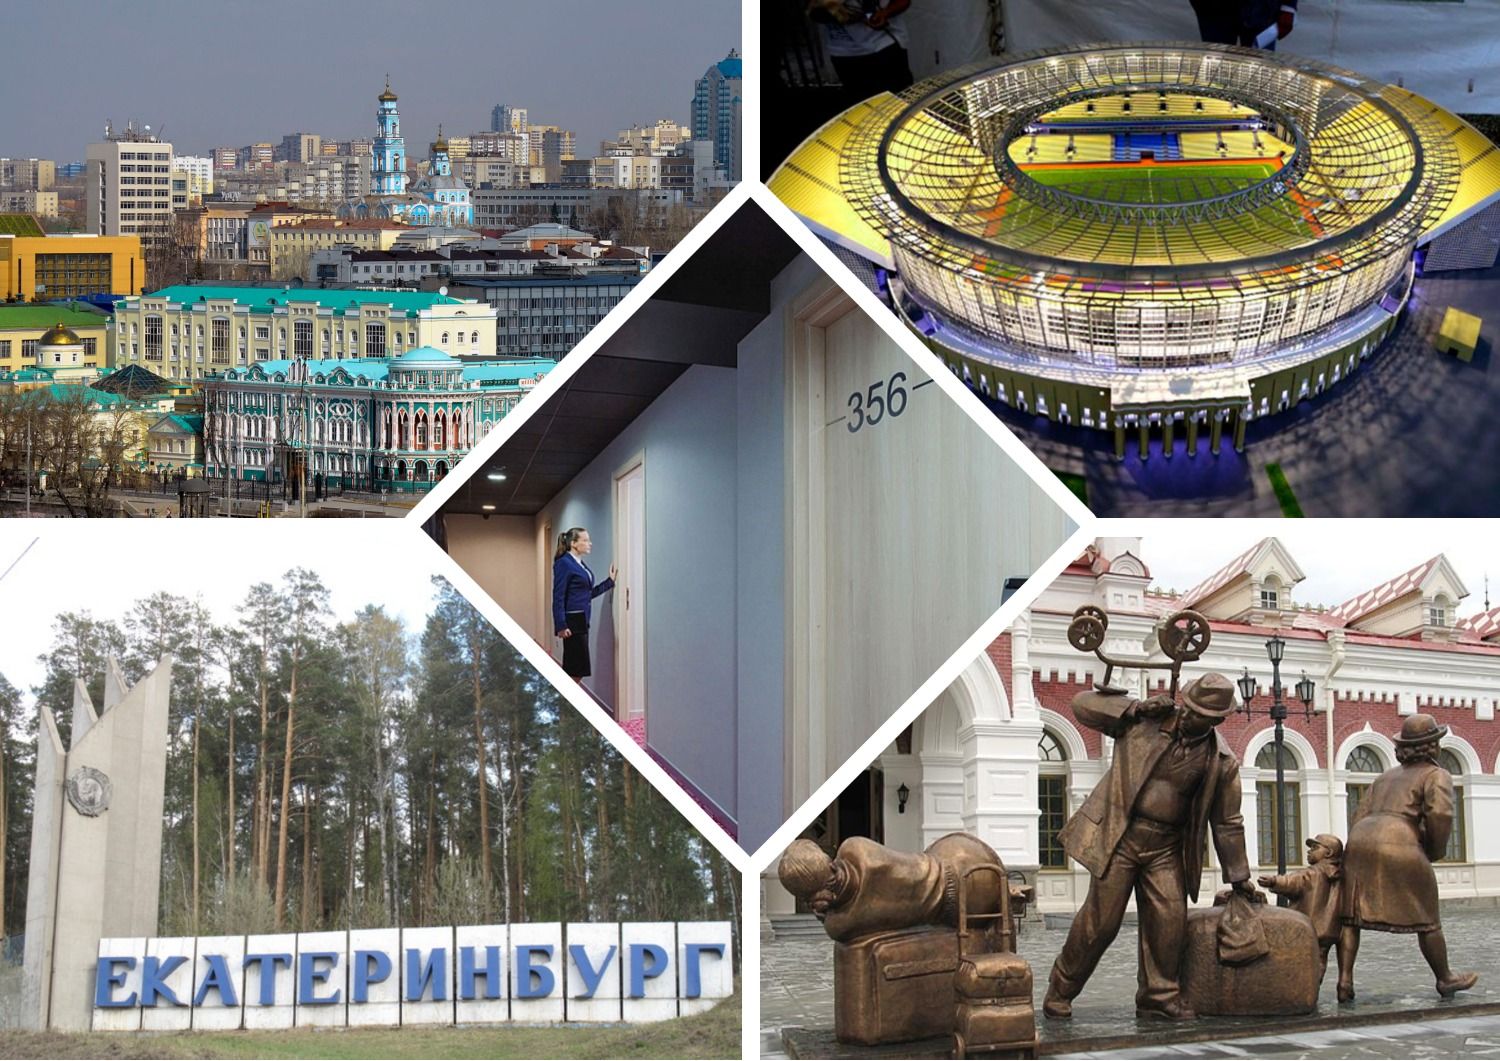 Les meilleurs hôtels, hôtels et auberges pas chers à Ekaterinbourg en 2020